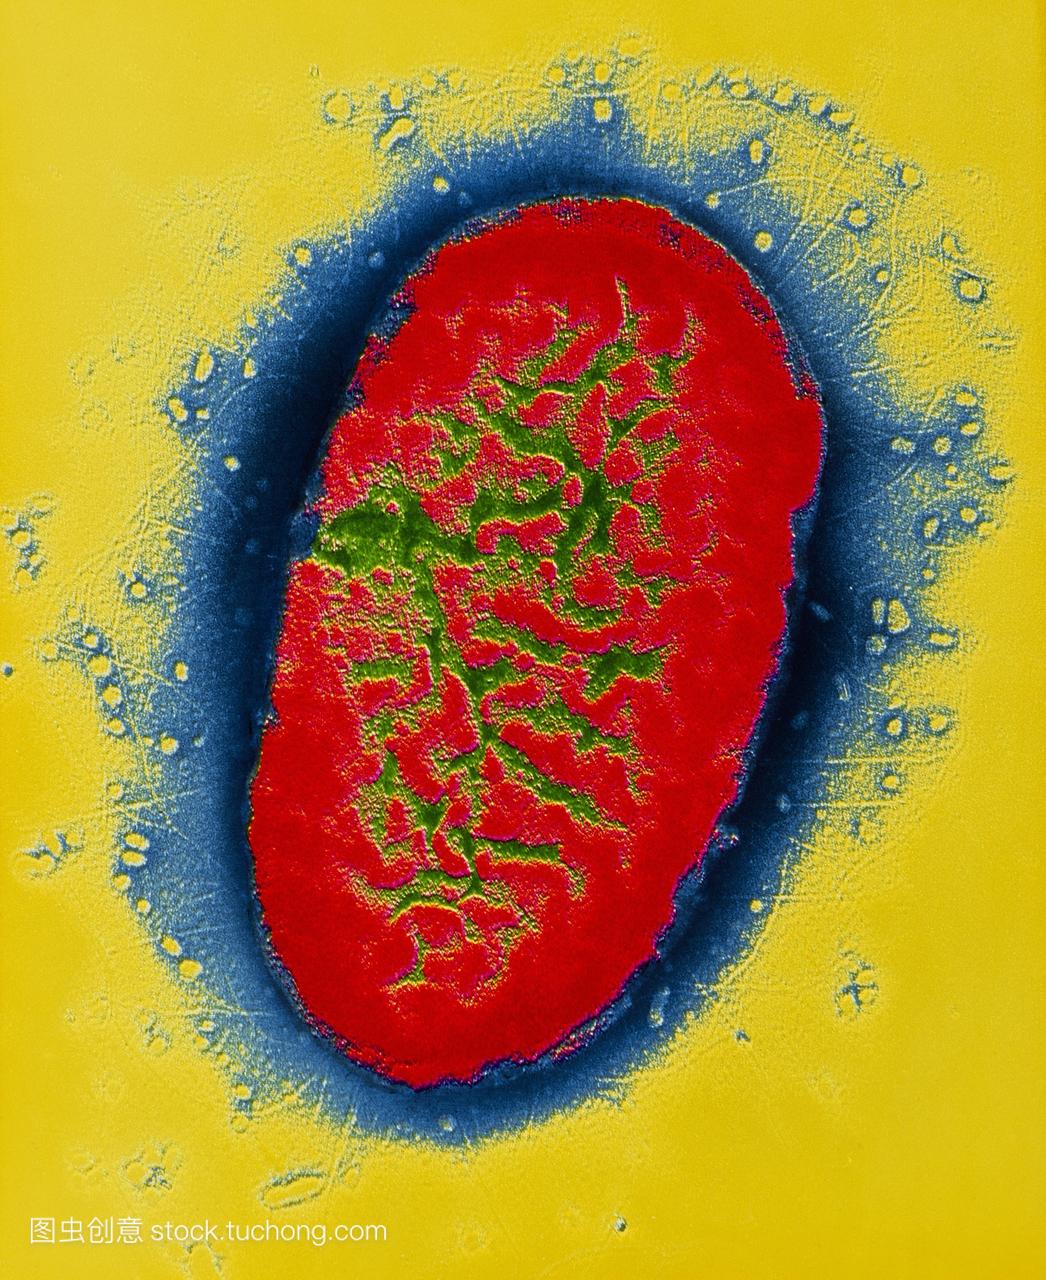 百日咳杆菌的假彩色透射电子显微照片。该微图